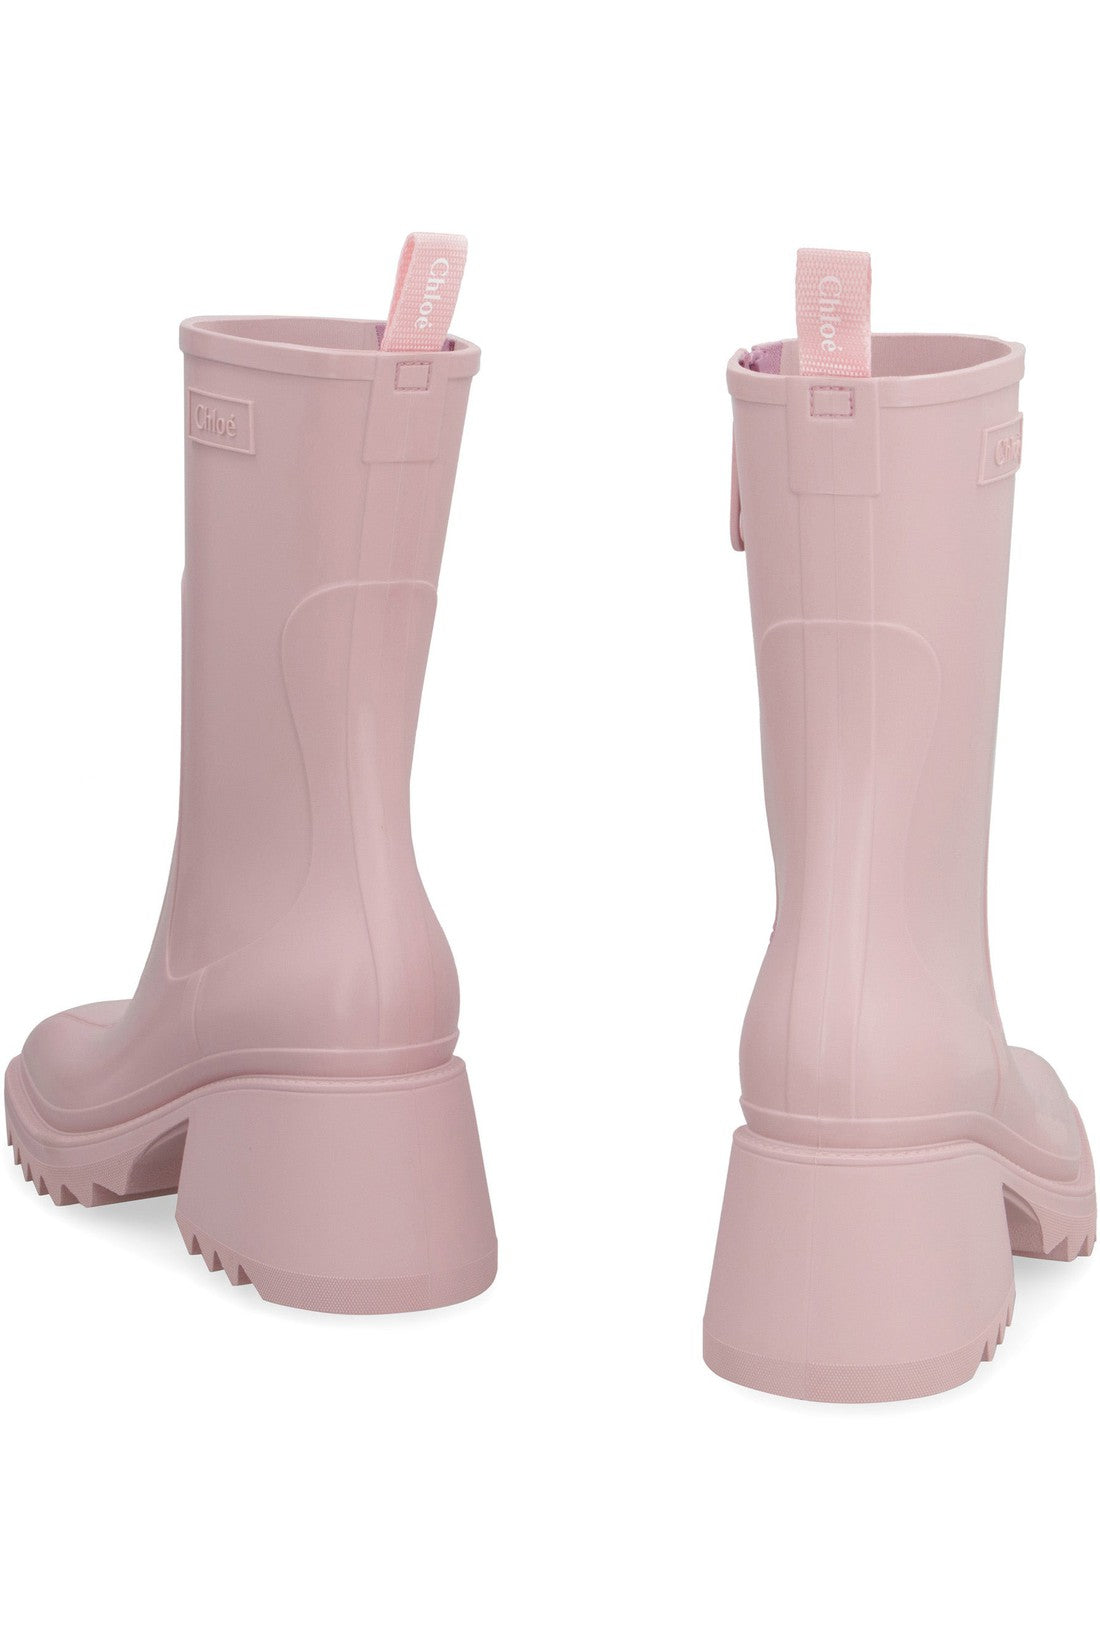 Chloé-OUTLET-SALE-Betty rubber boots-ARCHIVIST